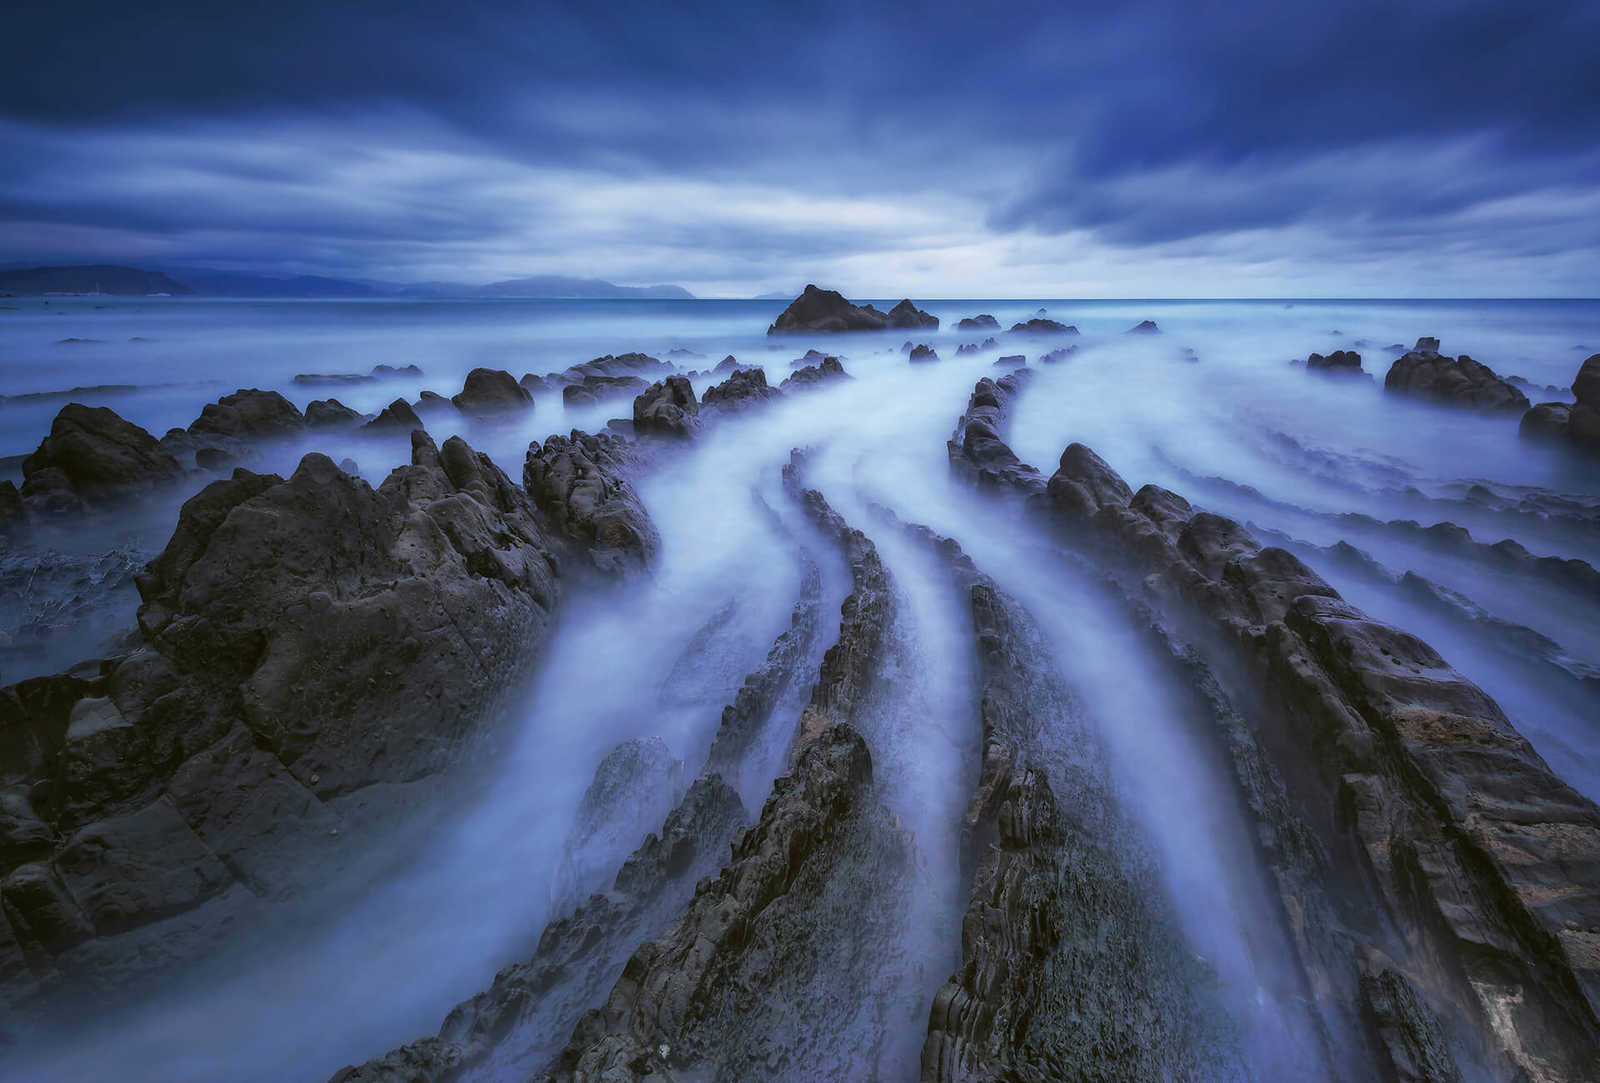             Fototapete Meer mit Nebel – Blau, Grau, Weiß
        